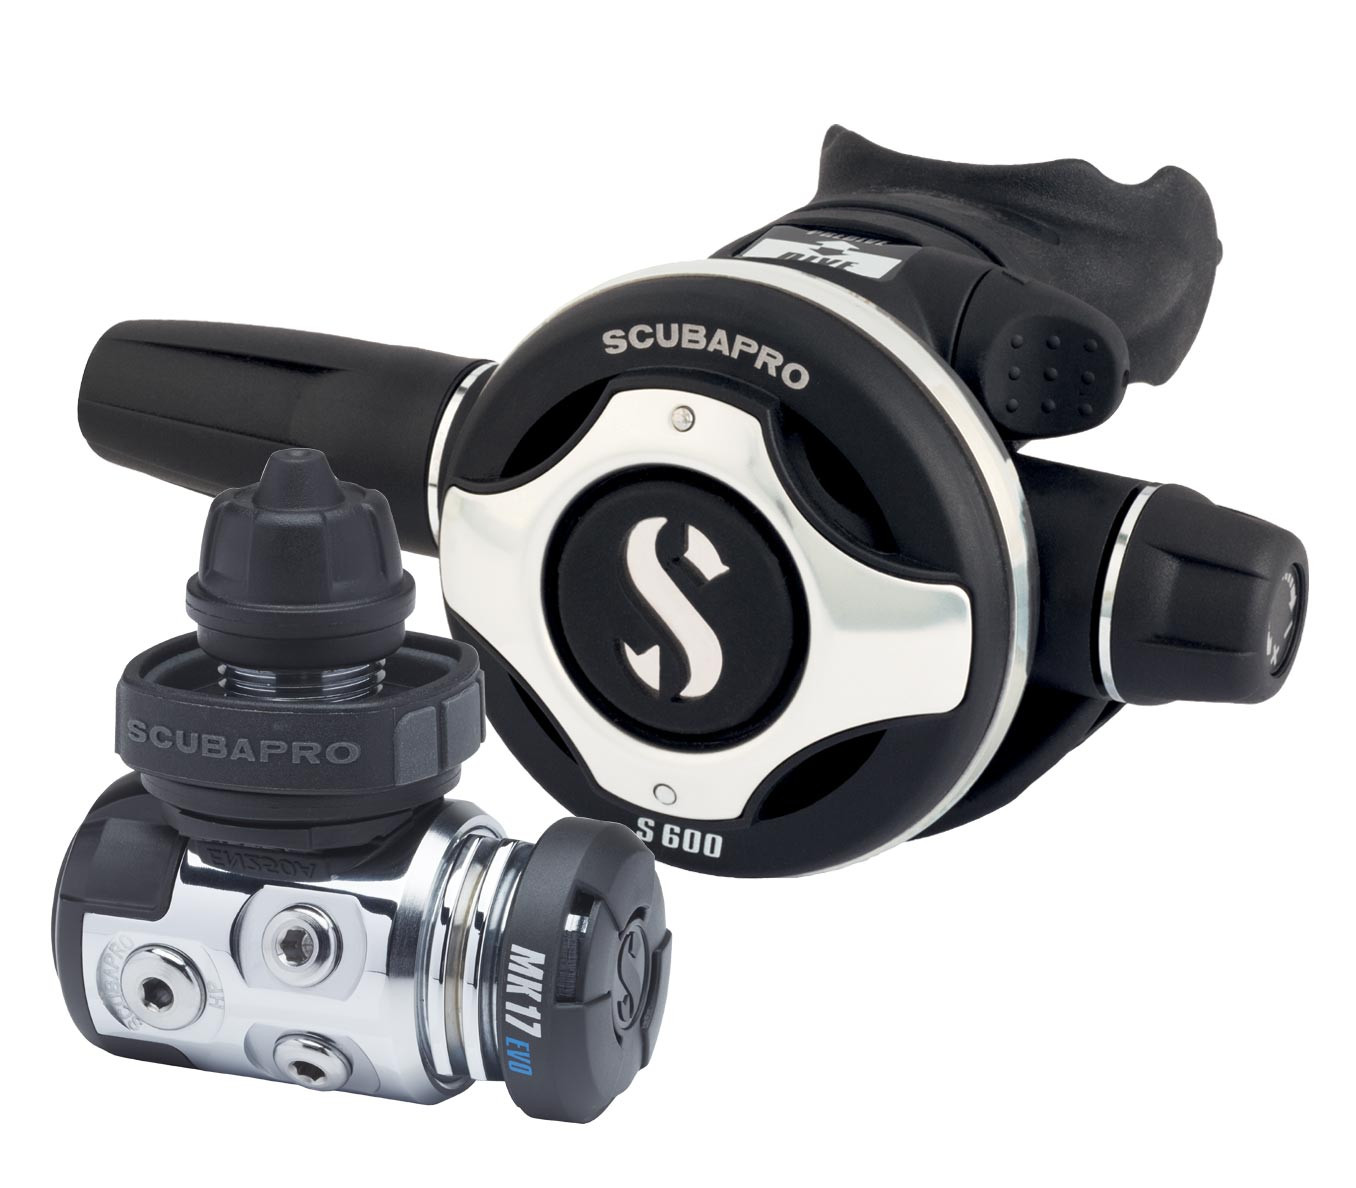 Scubapro MK17 Evo S600 DIN - Regulator Set - Regulators - Diving - Dive |  Mareshop.eu